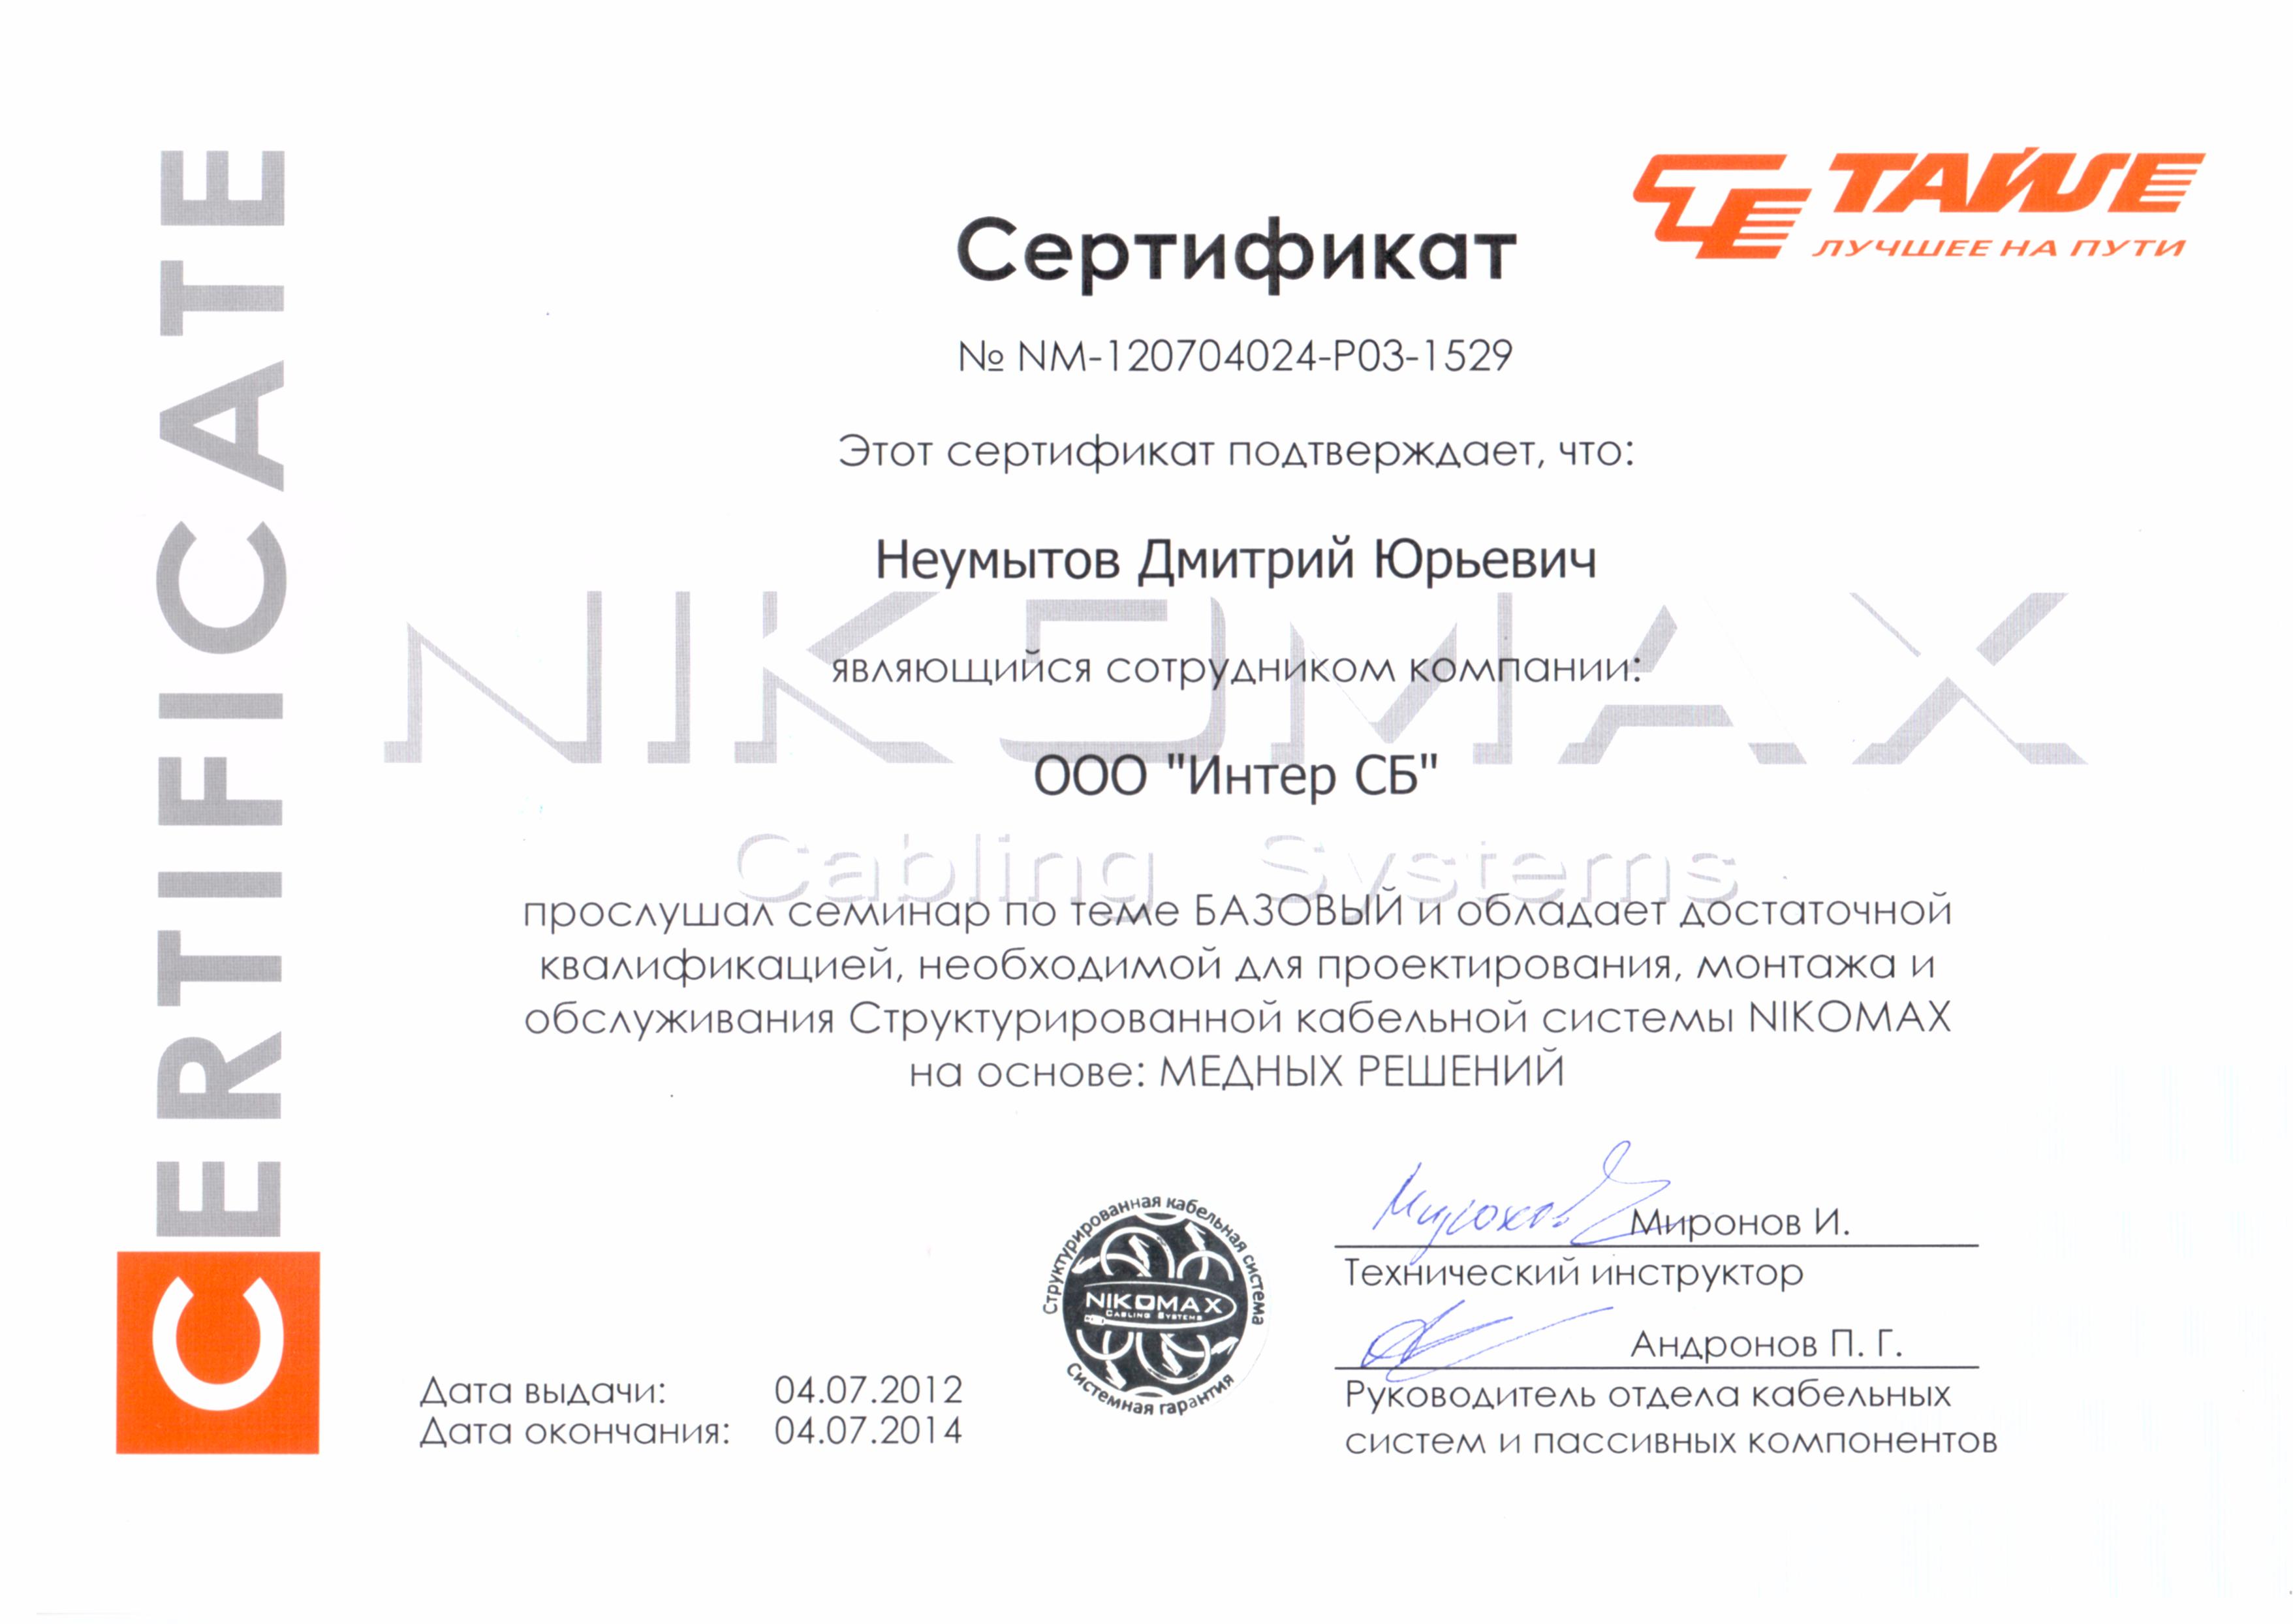 Сертификат прохождения обучения СКС NIKOMAX